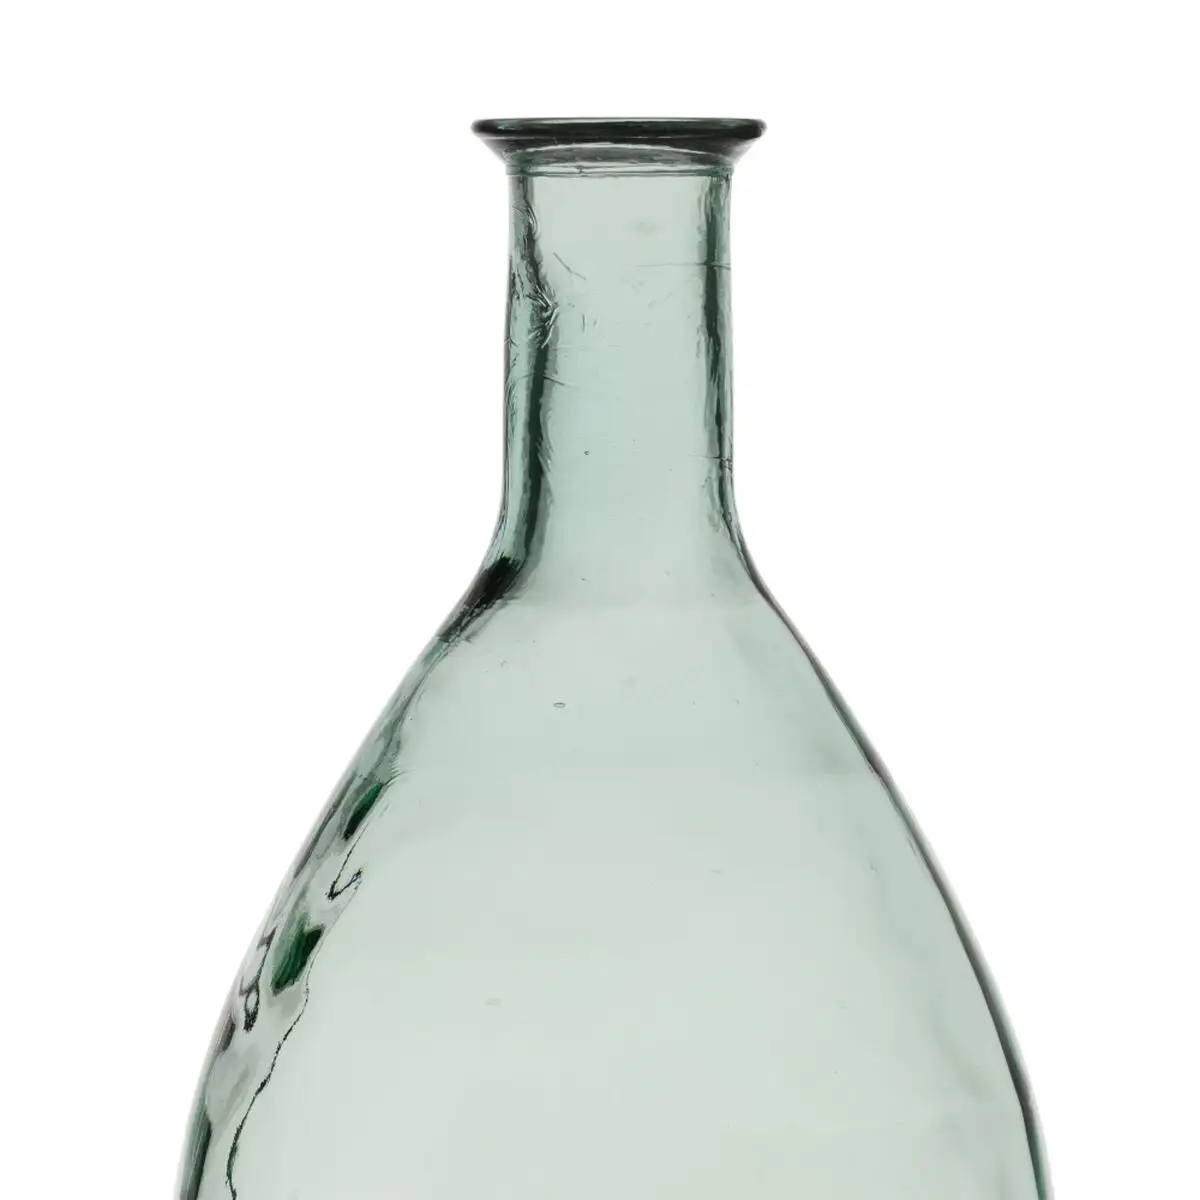 Vase verre recycle vert 28 x 28 x 60 cm_8753. Bienvenue sur DIAYTAR SENEGAL - Là où Chaque Objet a une Âme. Plongez dans notre catalogue et trouvez des articles qui portent l'essence de l'artisanat et de la passion.